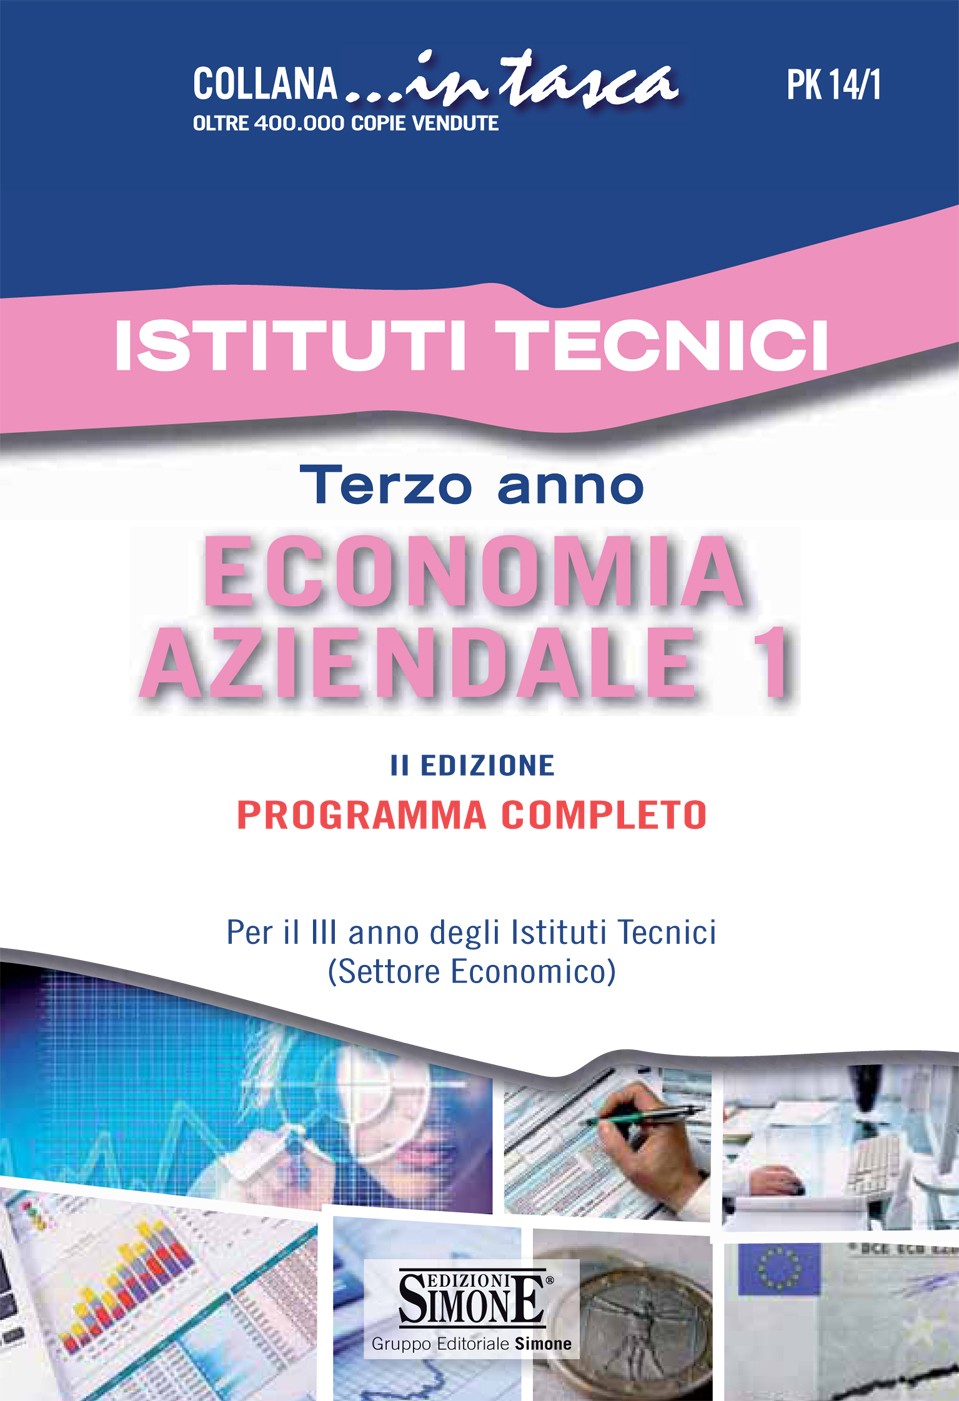 Istituti Tecnici - Terzo anno Economia aziendale 1 - Librerie.coop